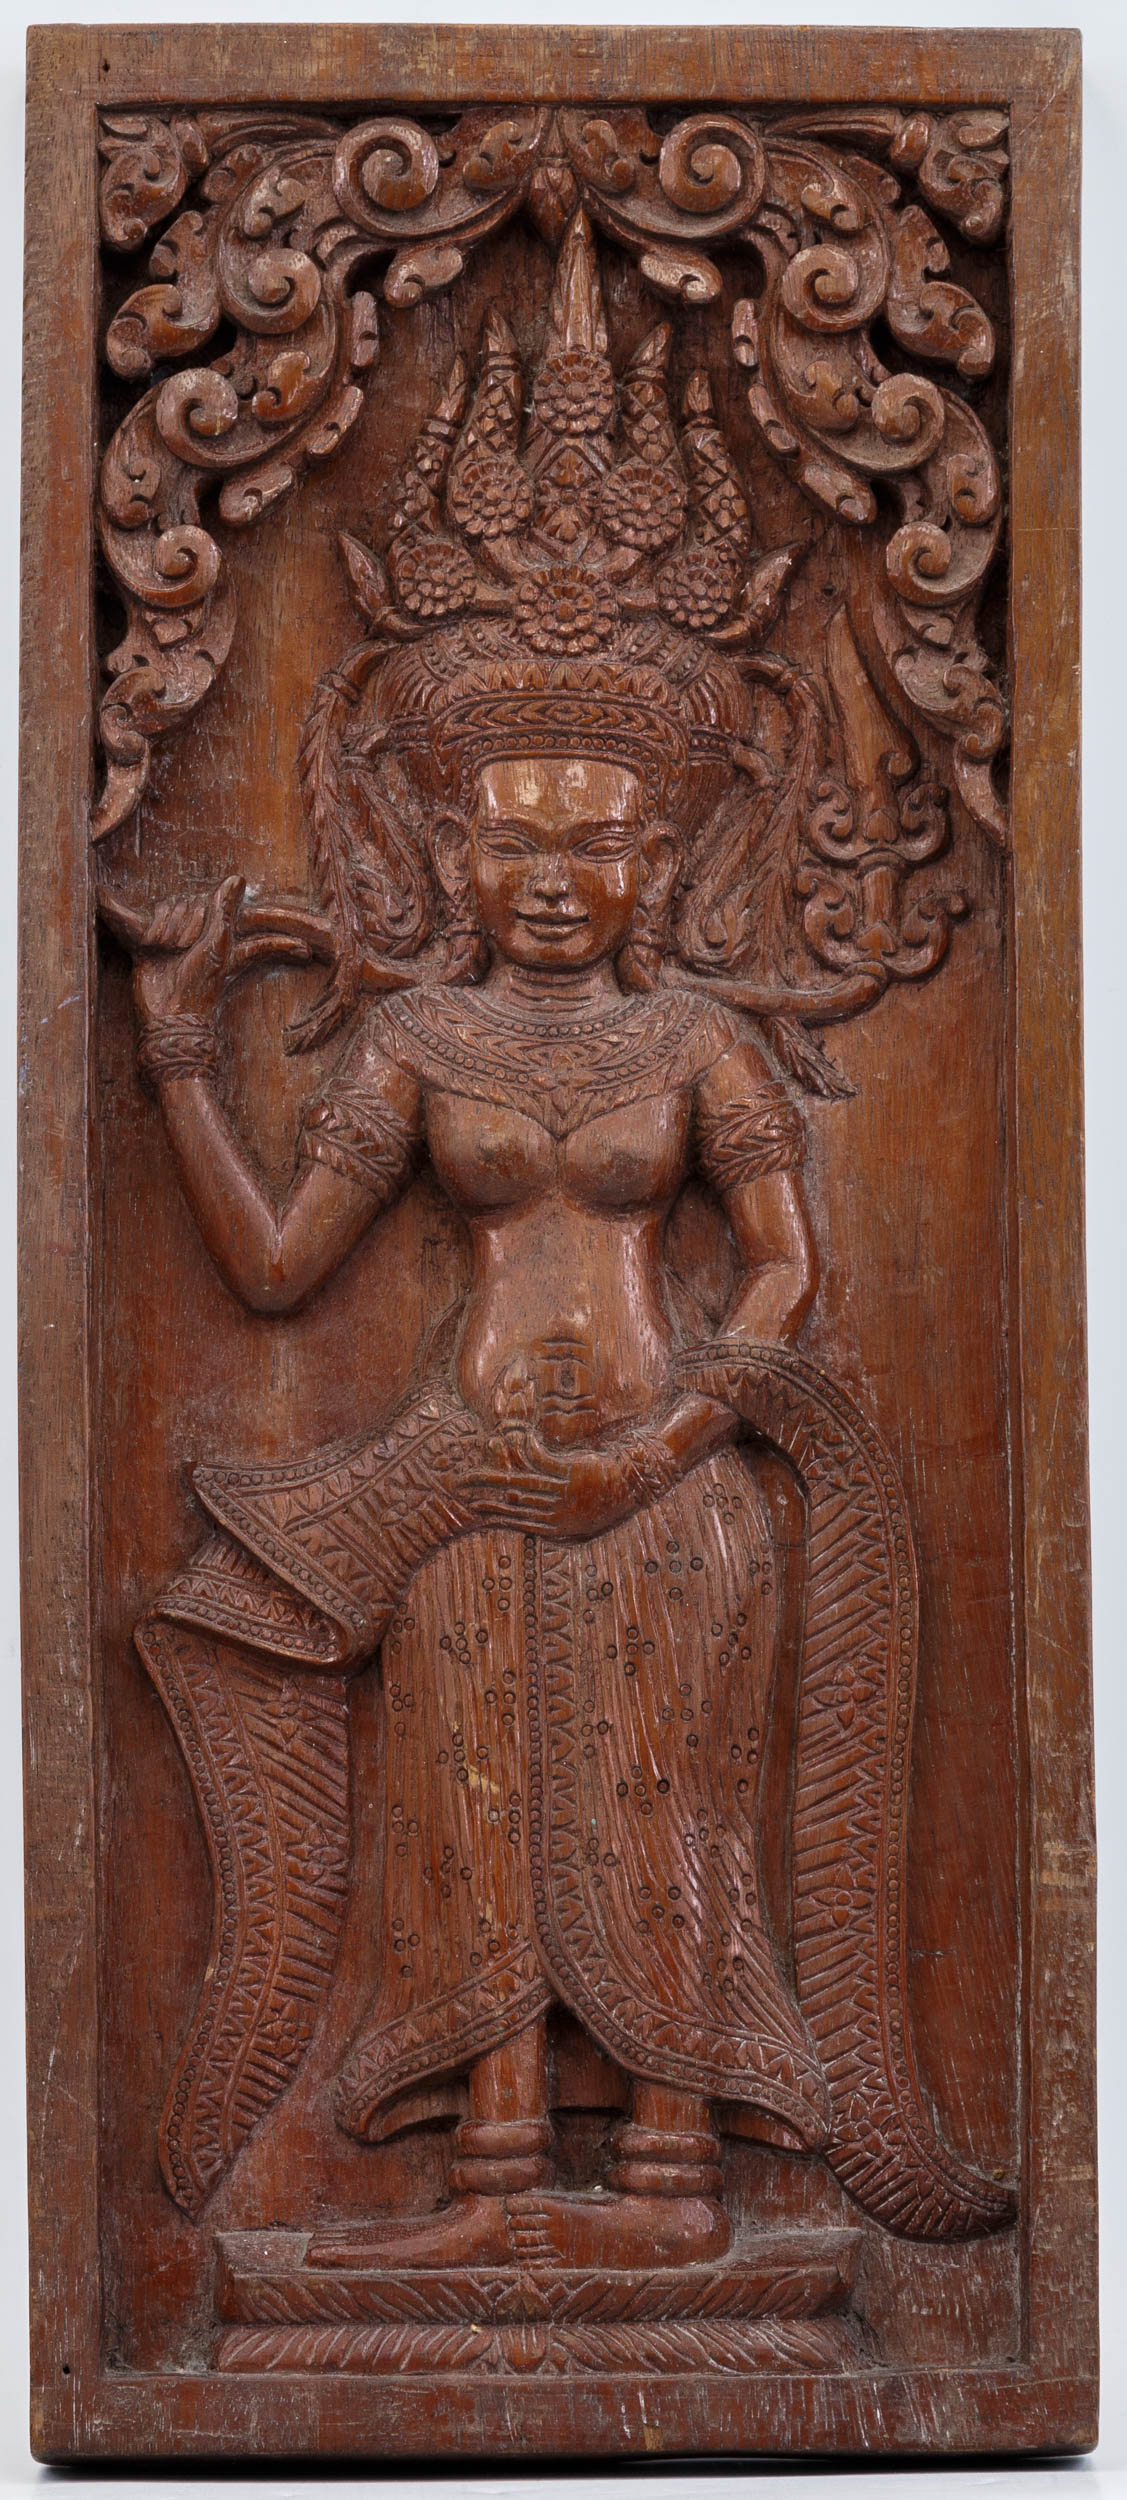 Панель из массива красного дерева с образом богини Апсары